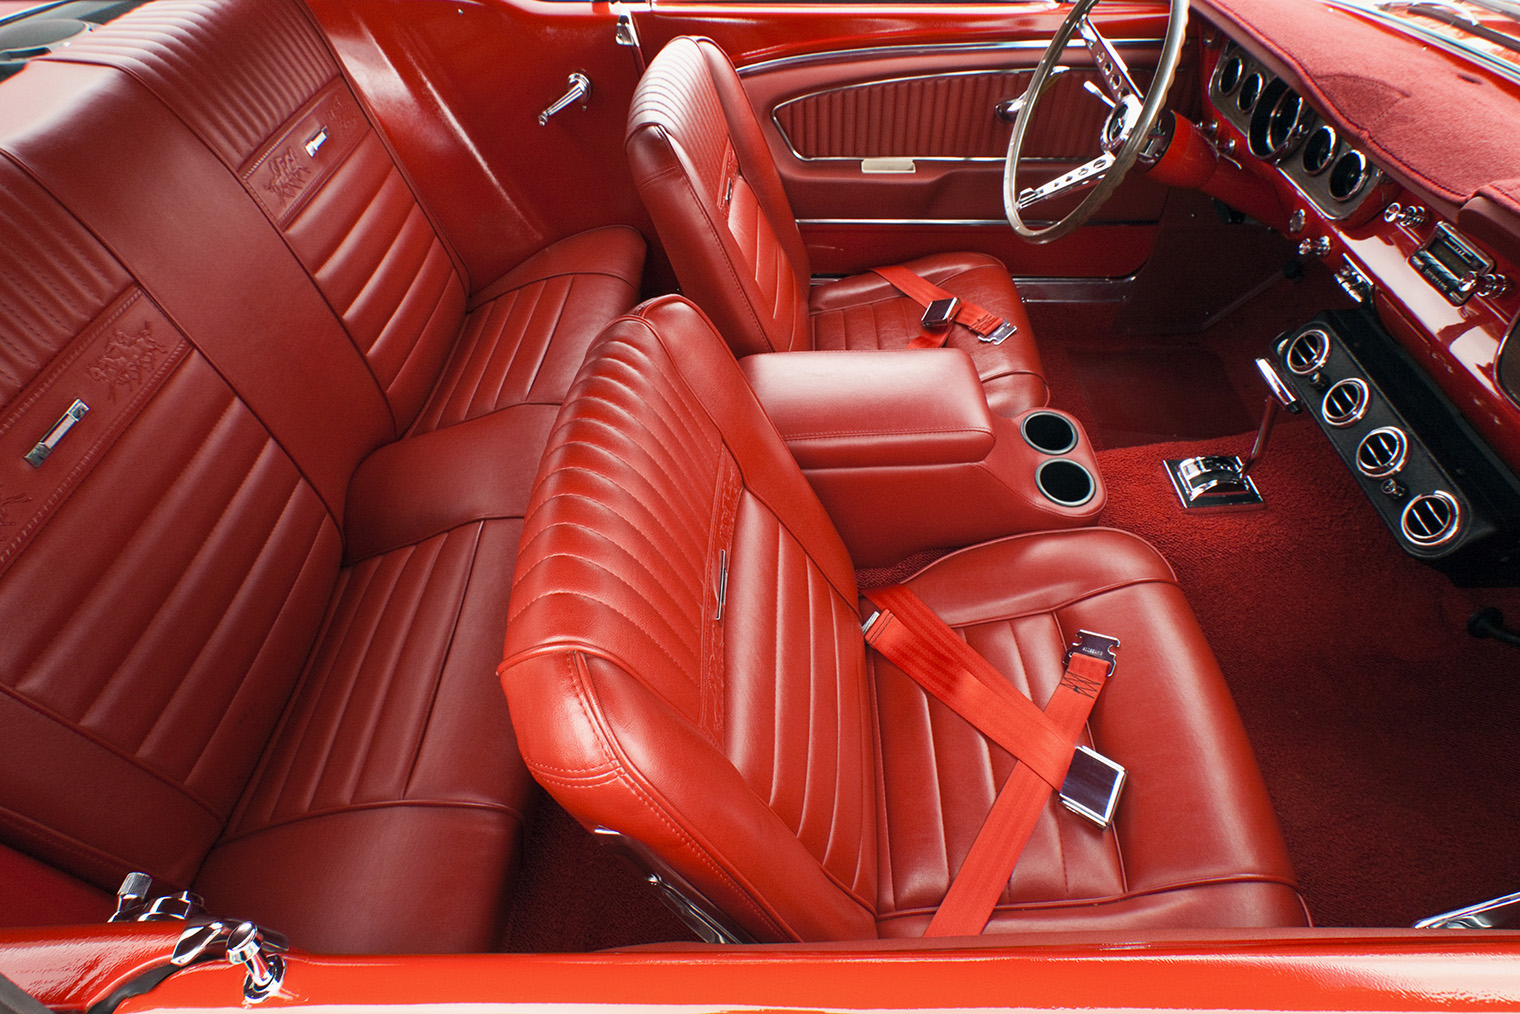 Двухточечные ремни на классическом Ford Mustang шестидесятых годов. Фотография: GTS Productions / Shutterstock / FOTODOM